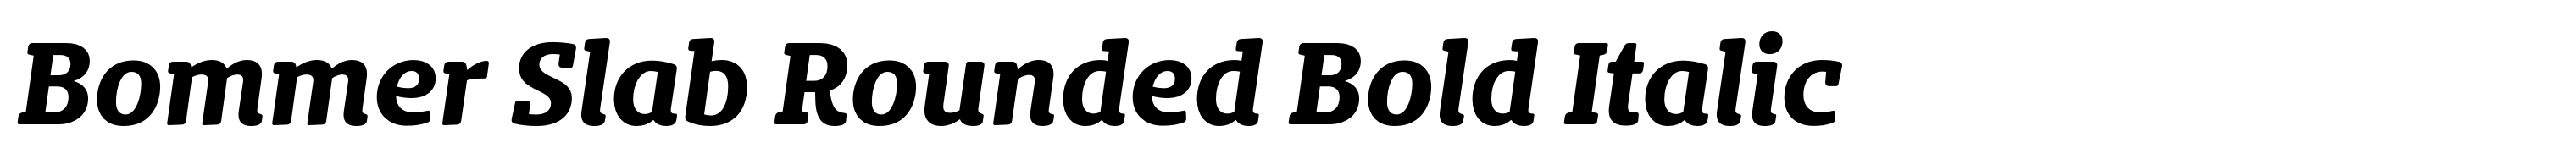 Bommer Slab Rounded Bold Italic